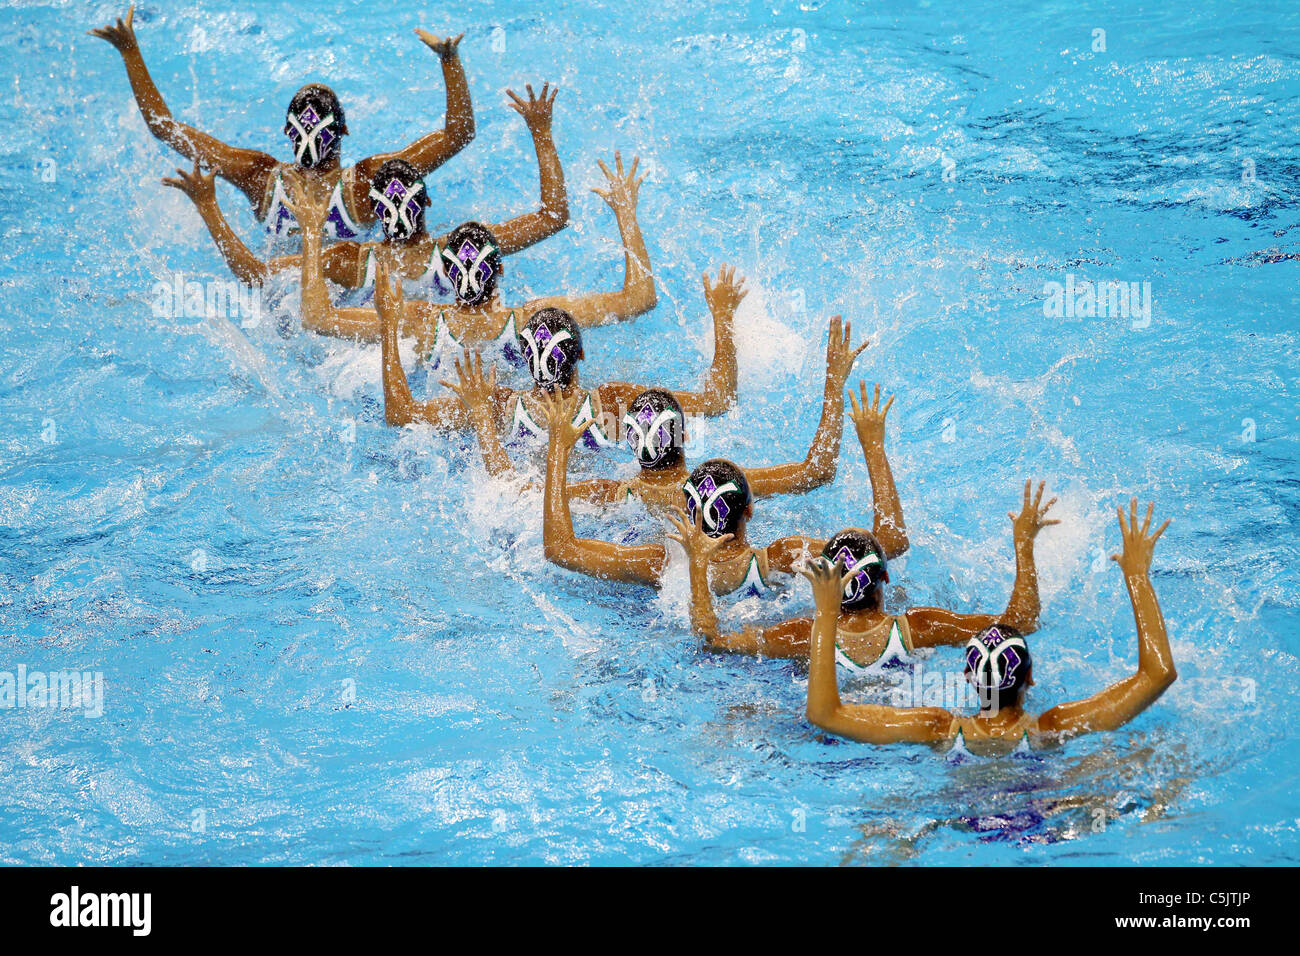 In Giappone il nuoto sincronizzato Squadra Nazionale Gruppo per xiv Campionati del Mondo di nuoto FINA Shanghai 2011. Foto Stock